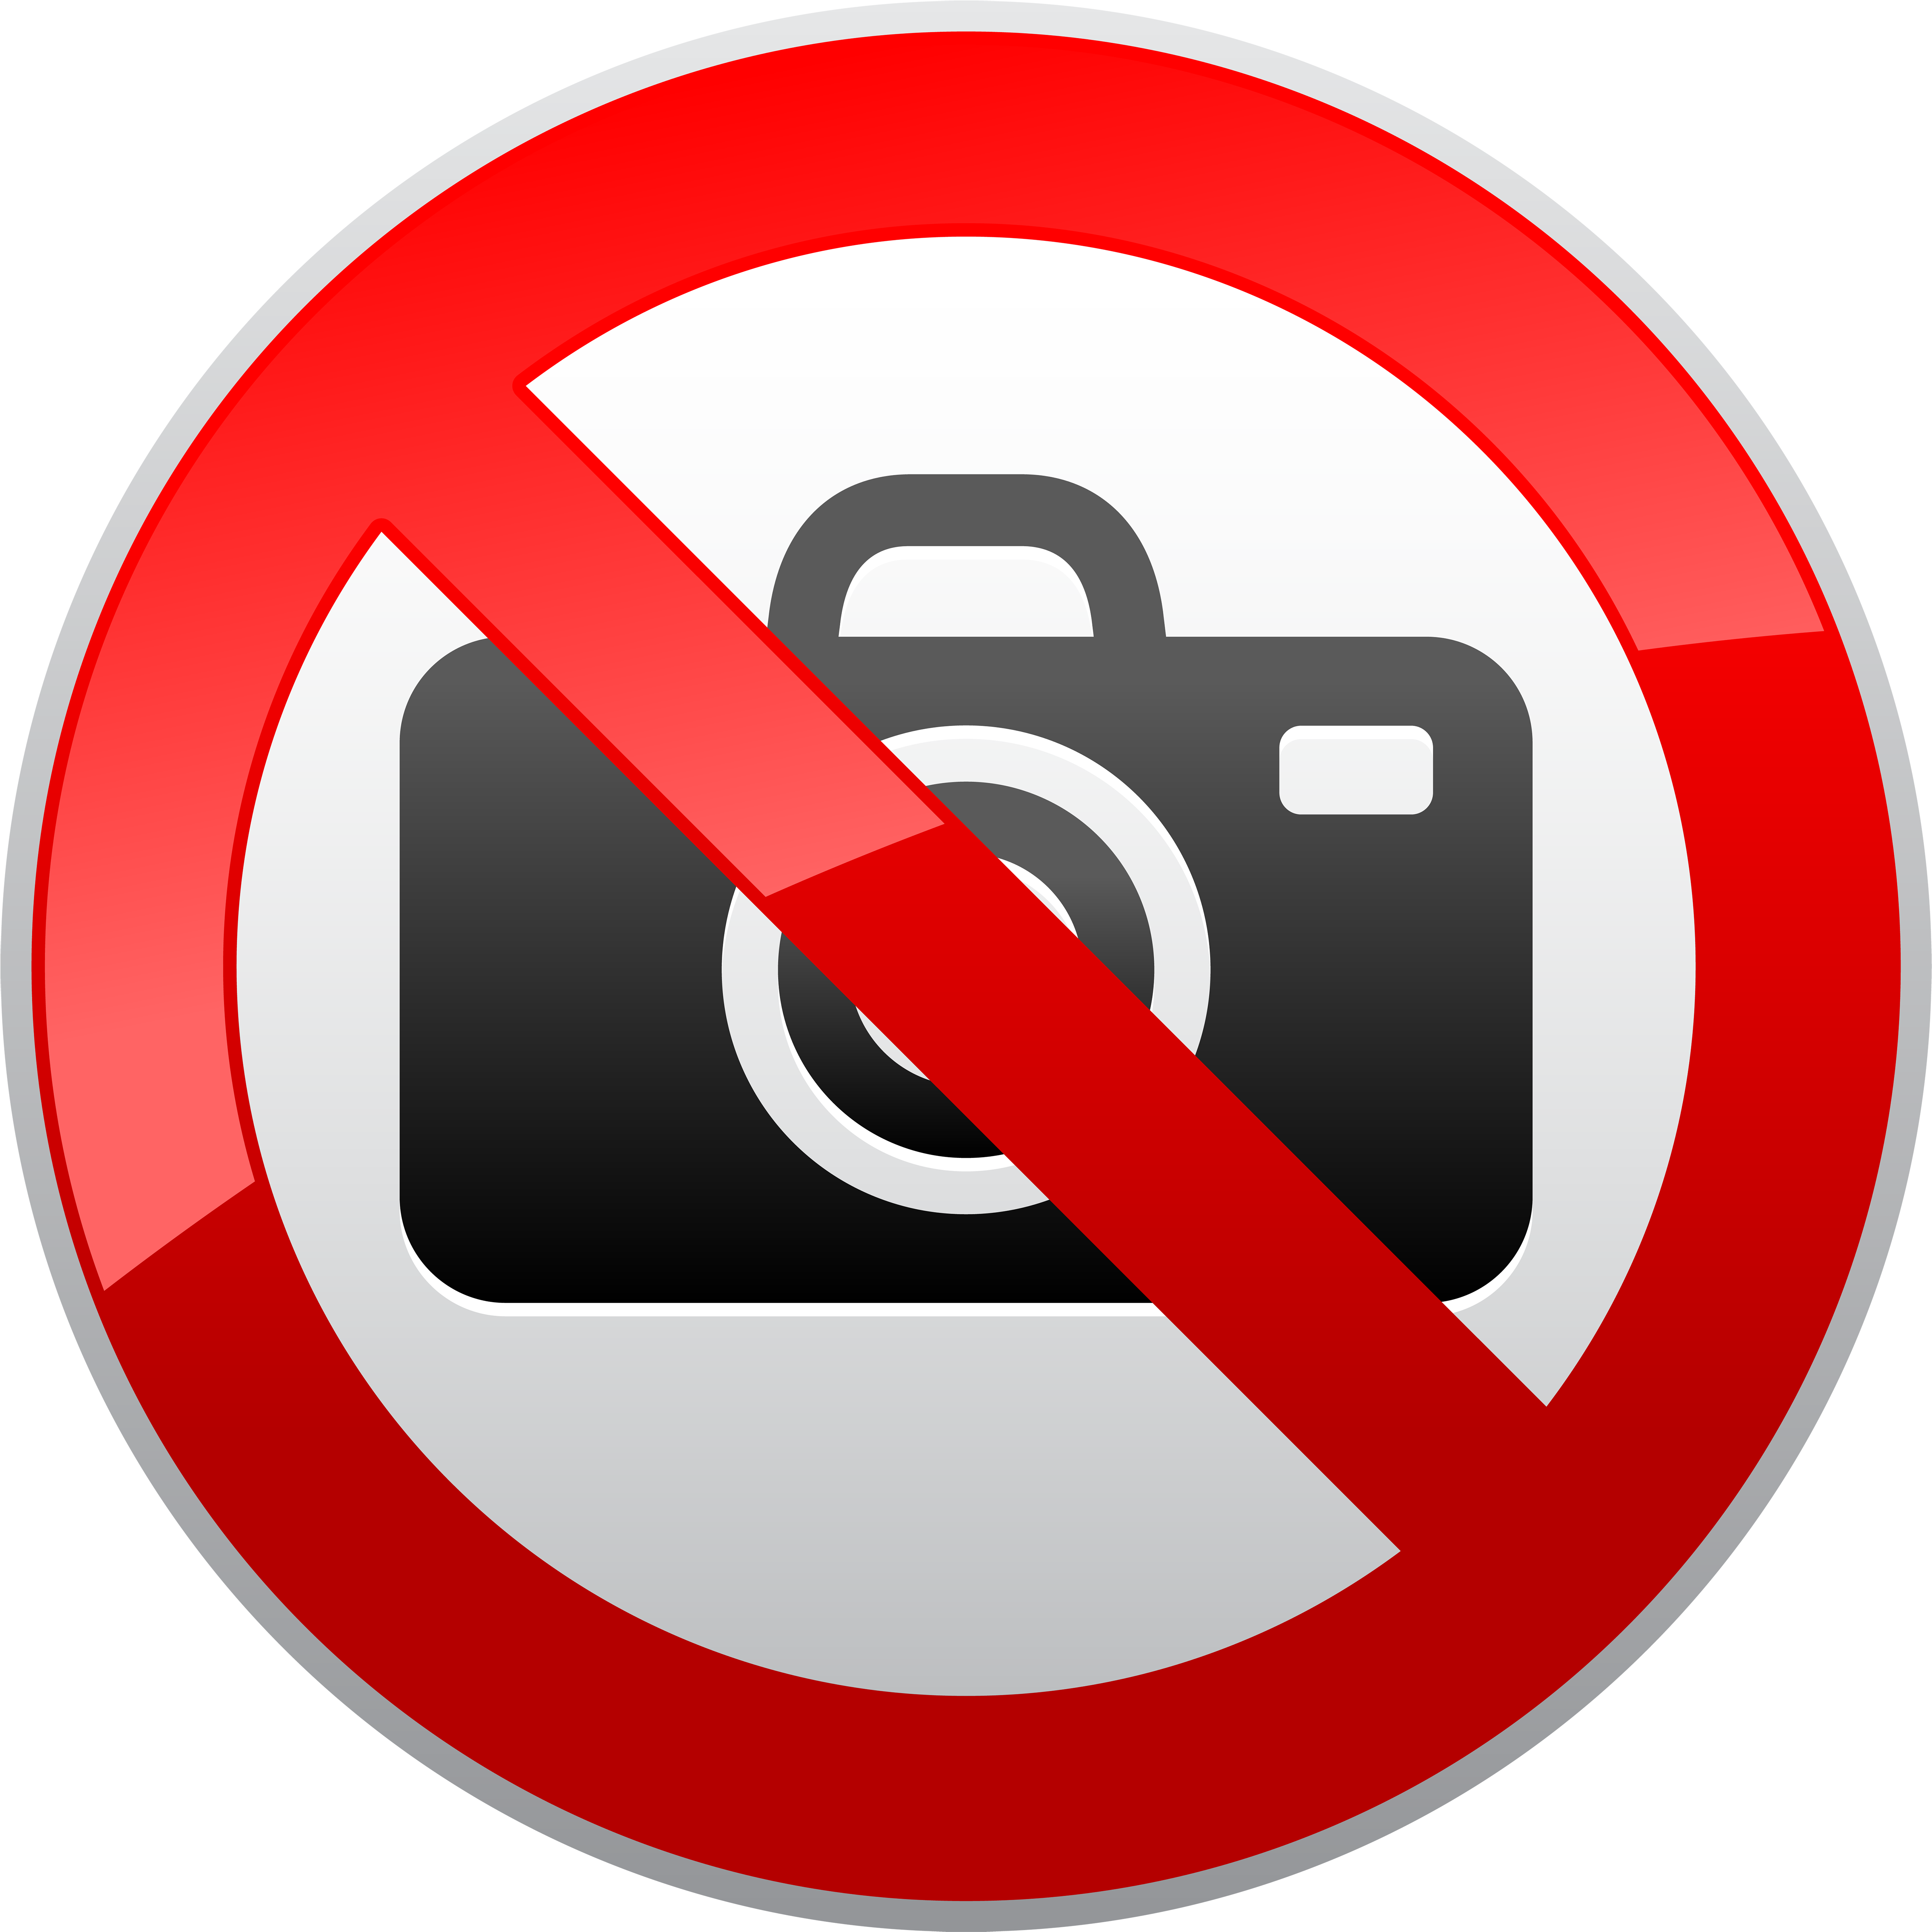 Фотосъемка запрещена знак. Фотографировать запрещено знак. Значок видеосъемка запрещена. Табличка съемка запрещена.